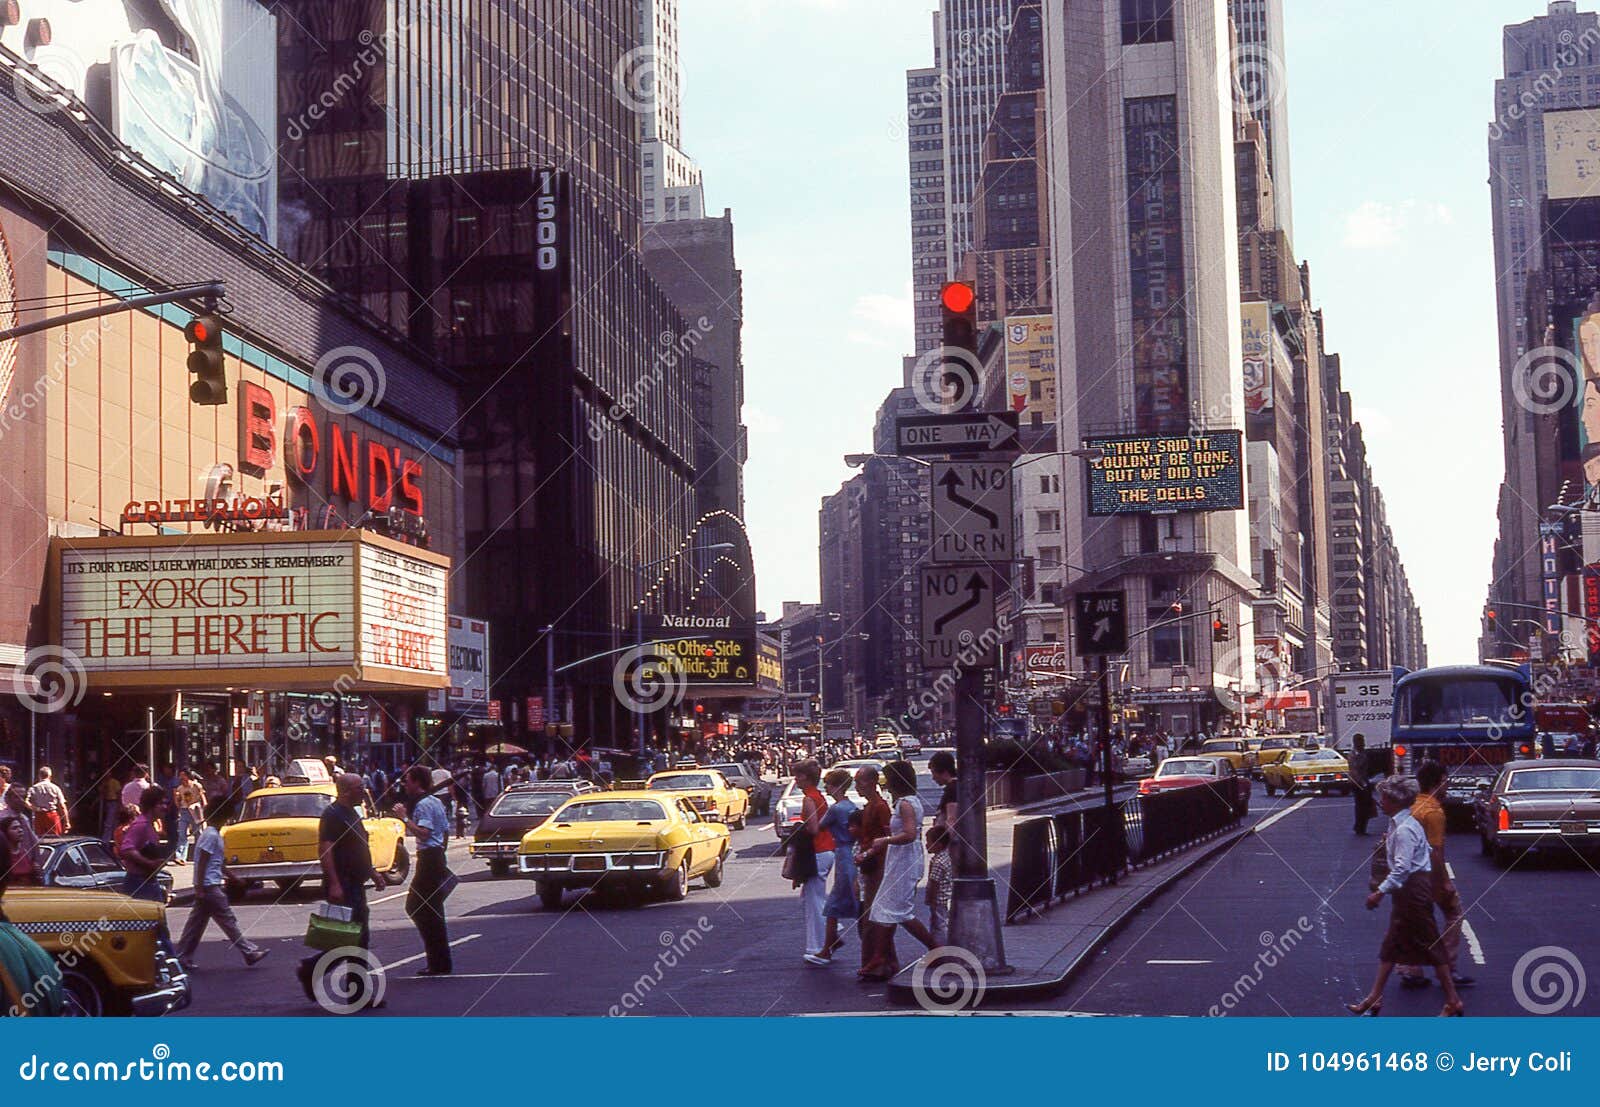 Times Square circa ` 1970 s